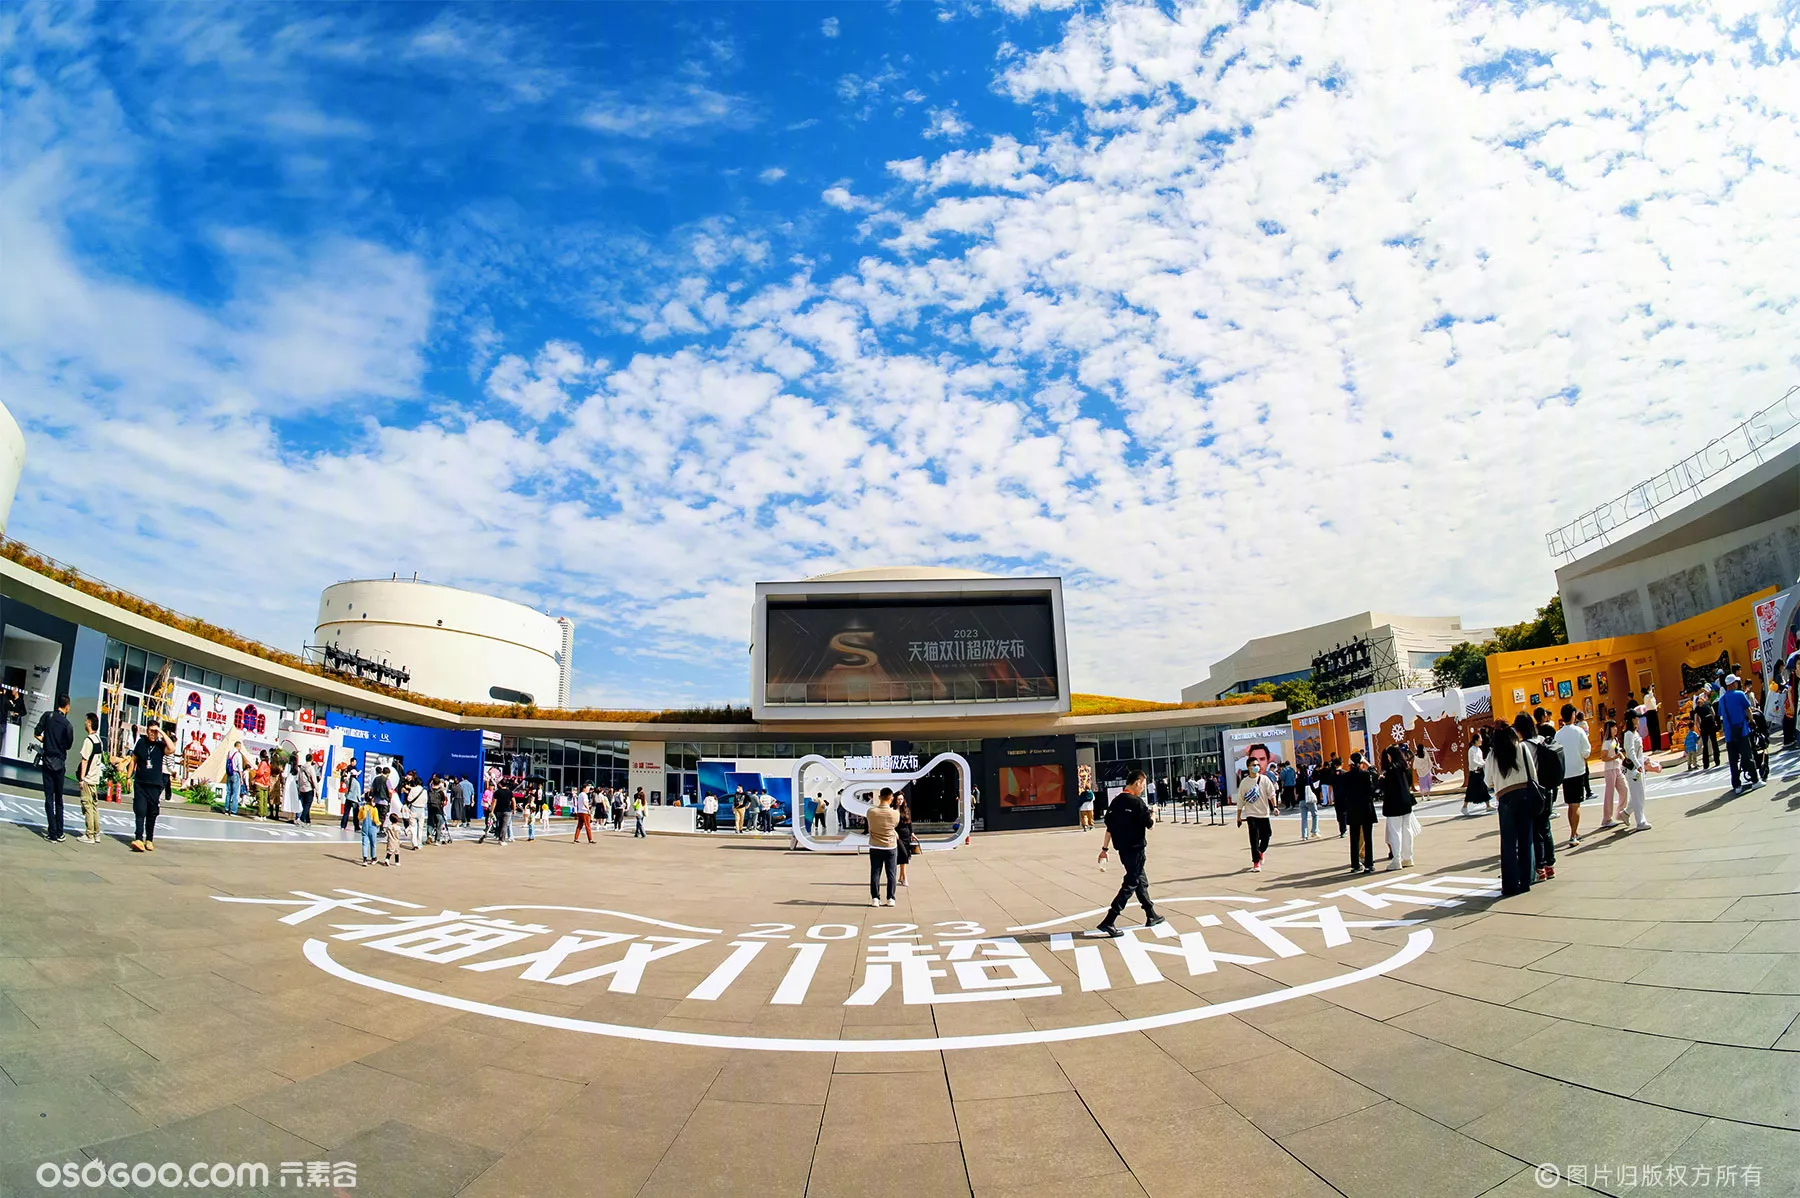 上海油罐艺术中心「天猫双11超级发布」